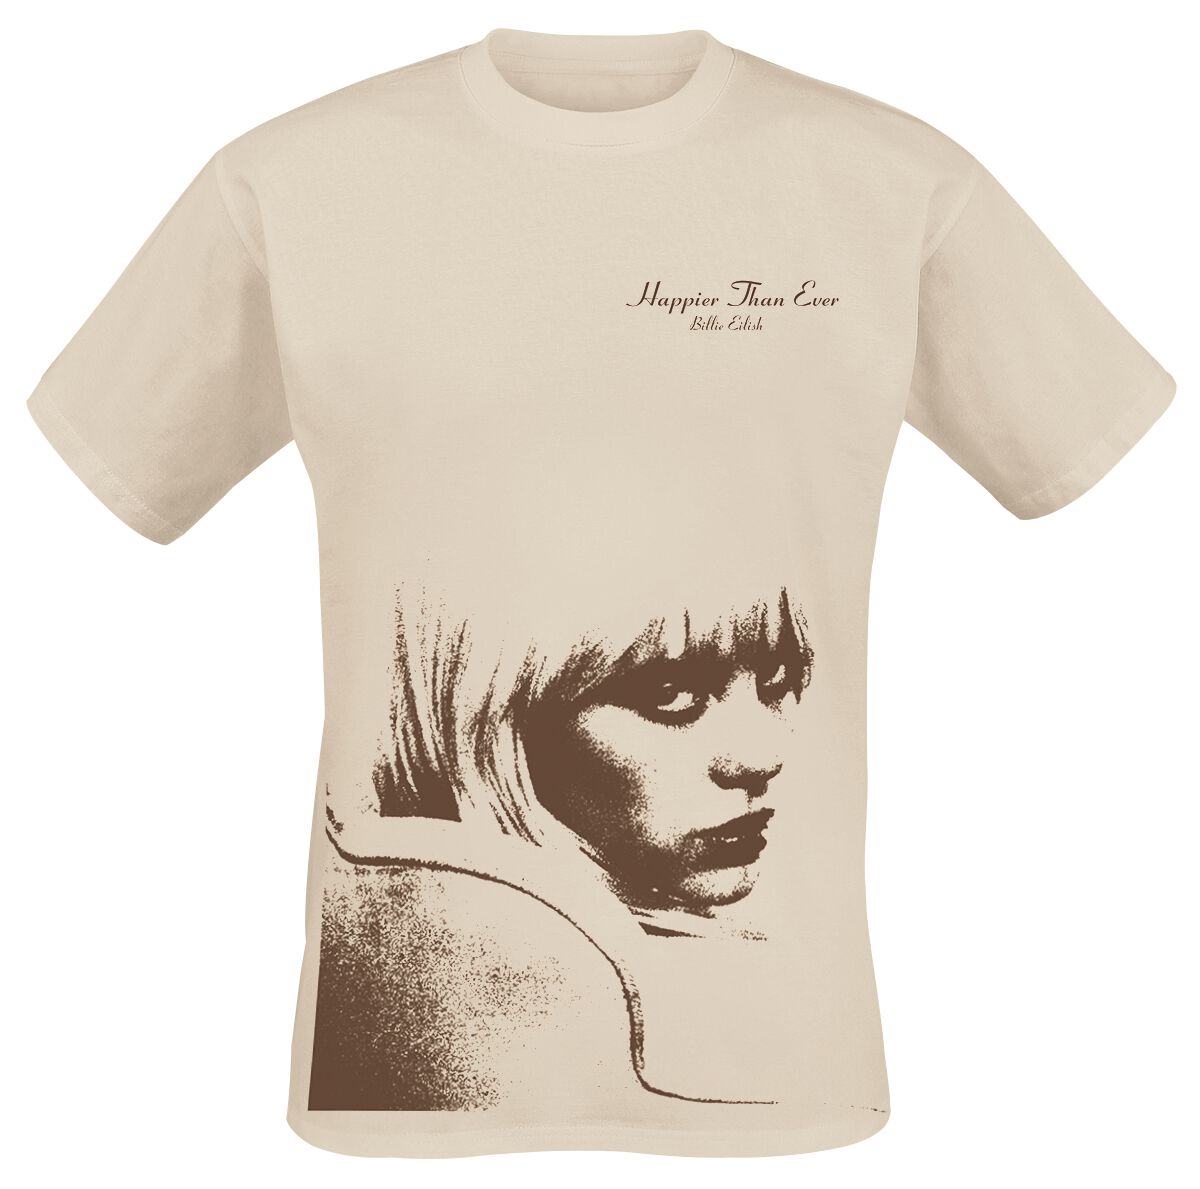 Billie Eilish T-Shirt - Happier than ever - XXL - für Männer - Größe XXL - beige  - Lizenziertes Merchandise! von Billie Eilish